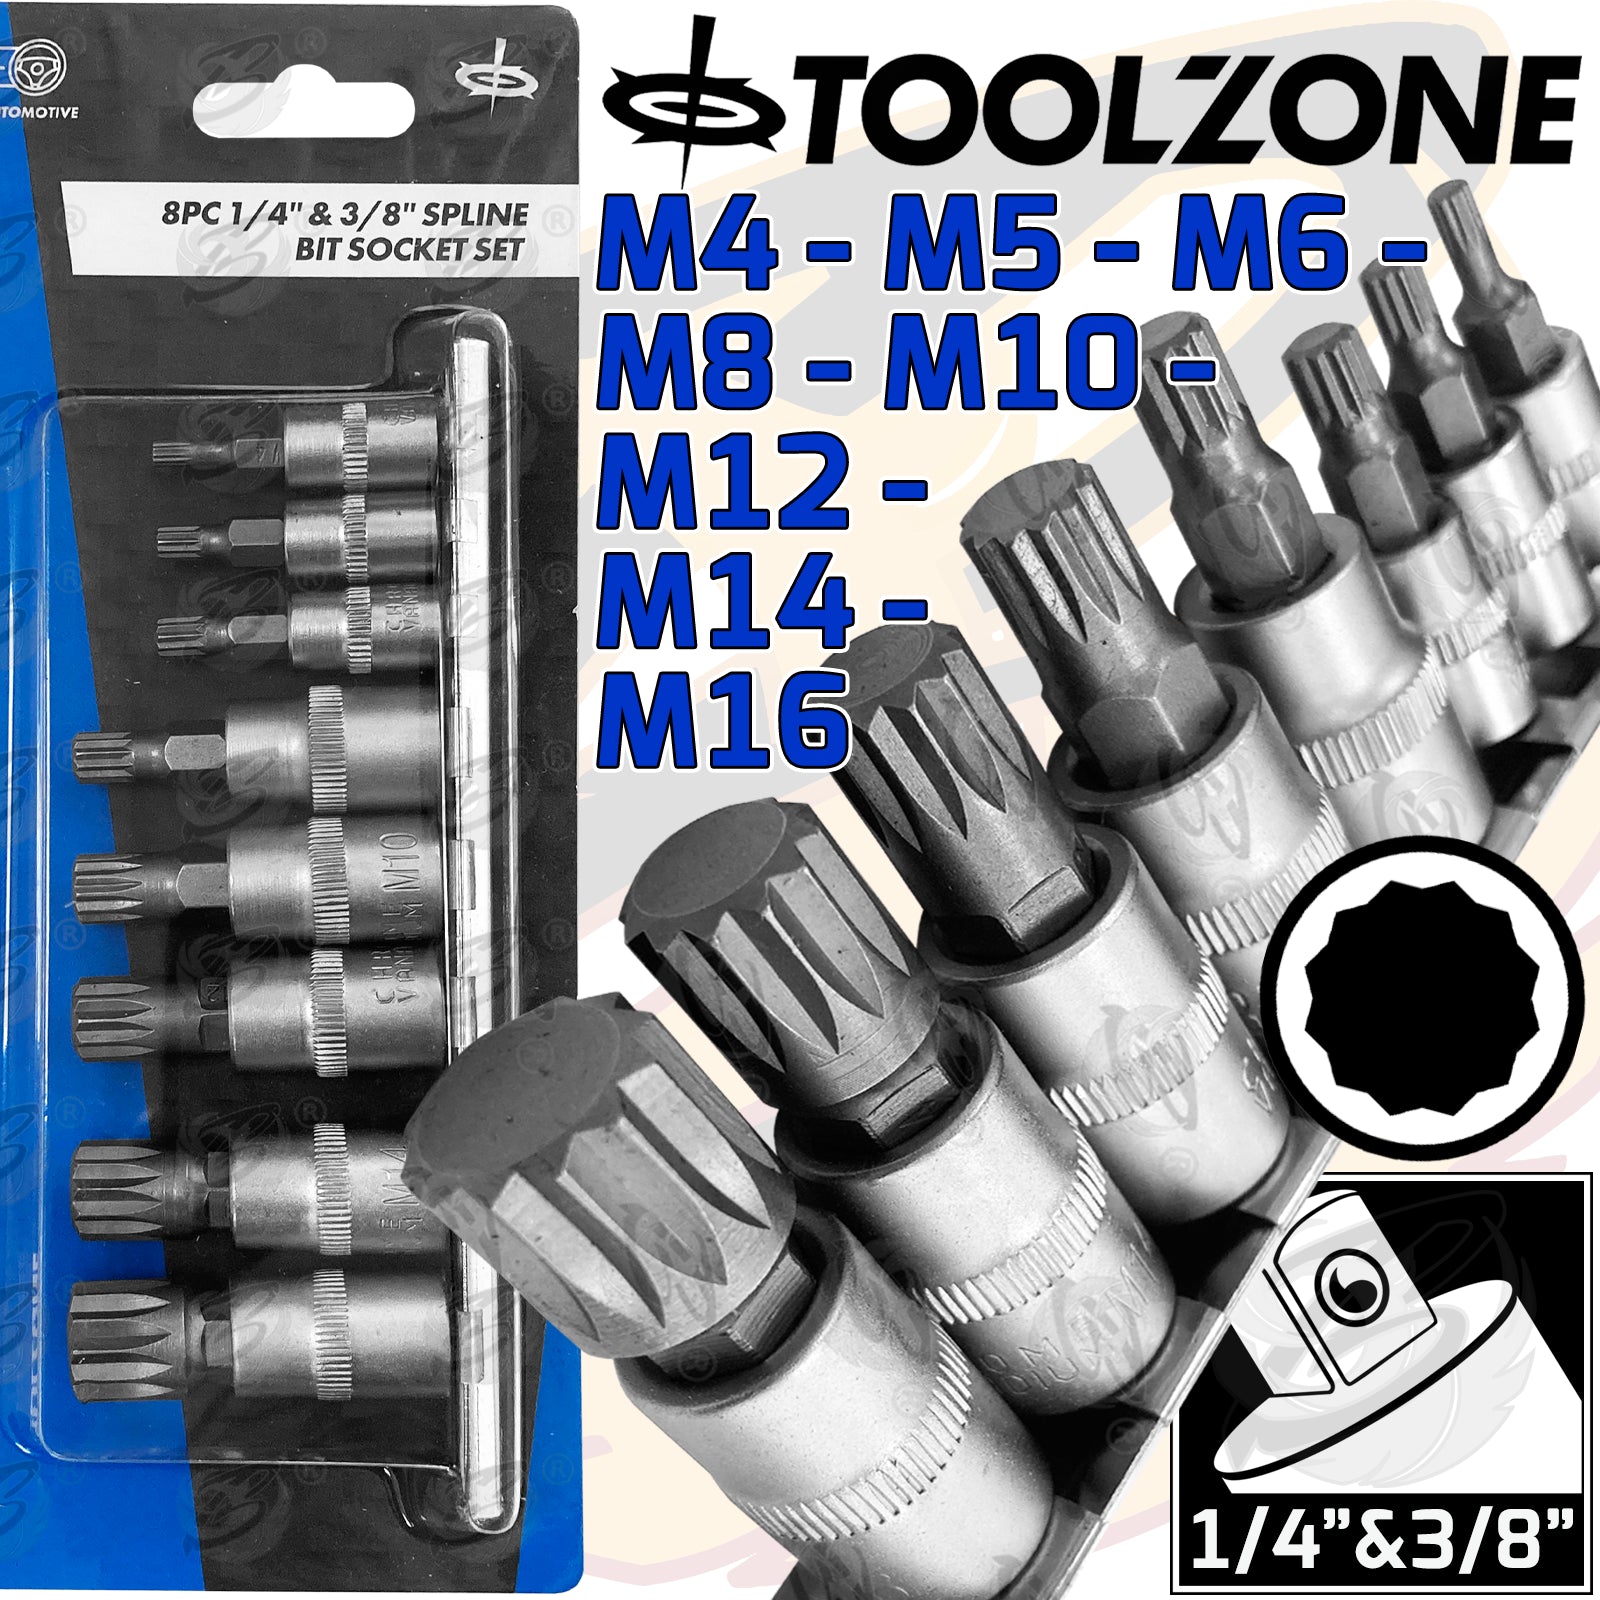 TOOLZONE 8PCS 1/4" & 3/8" DRIVE SPLINE BIT SOCKETS M4 - M16